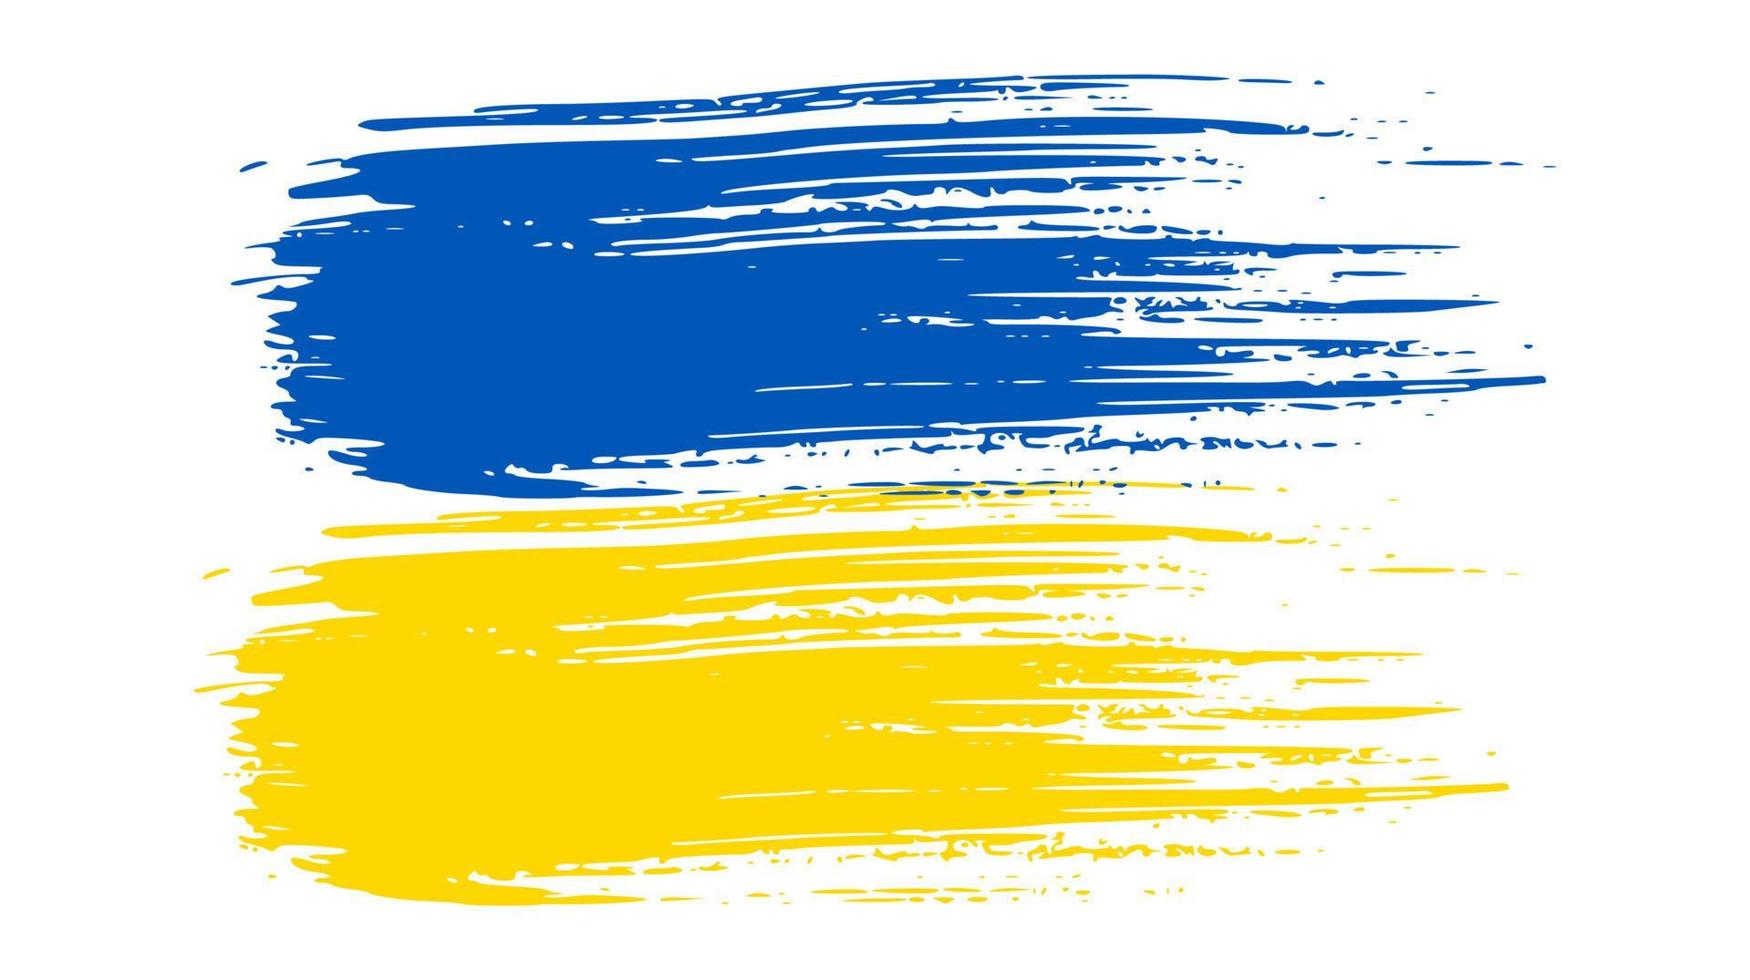 ukrainische Nationalflagge im Grunge-Stil. gemalt mit einem pinselstrich flagge der ukraine. Vektor-Illustration vektor